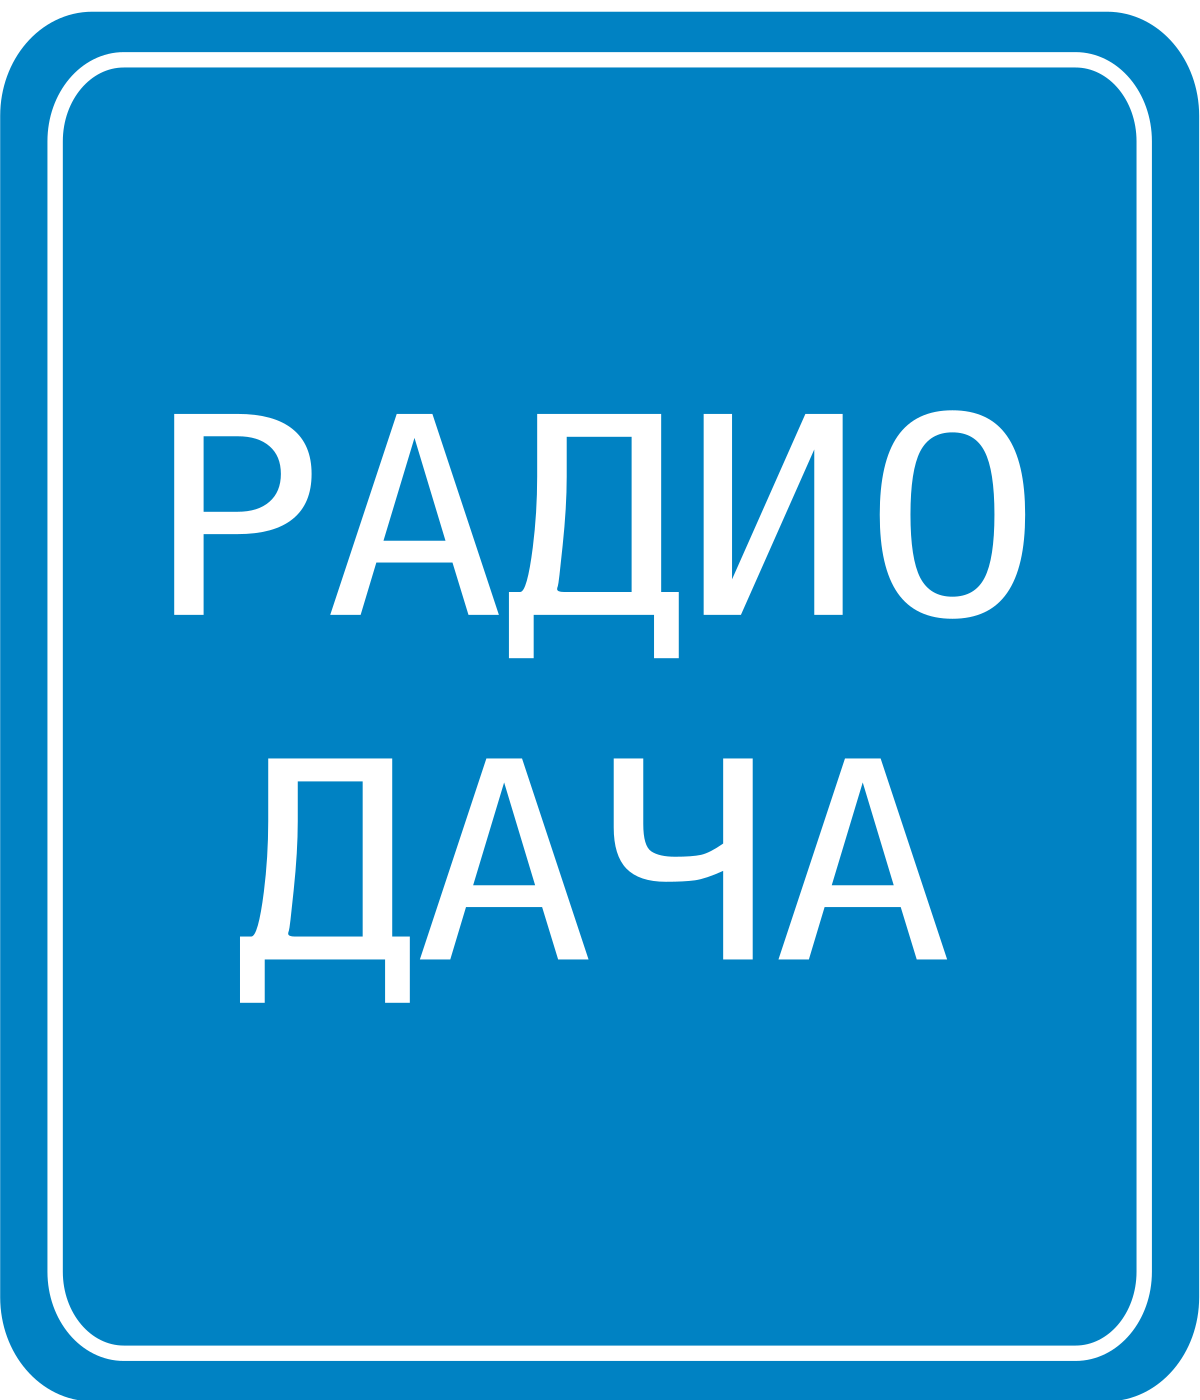 Радио Дача Новокузнецк